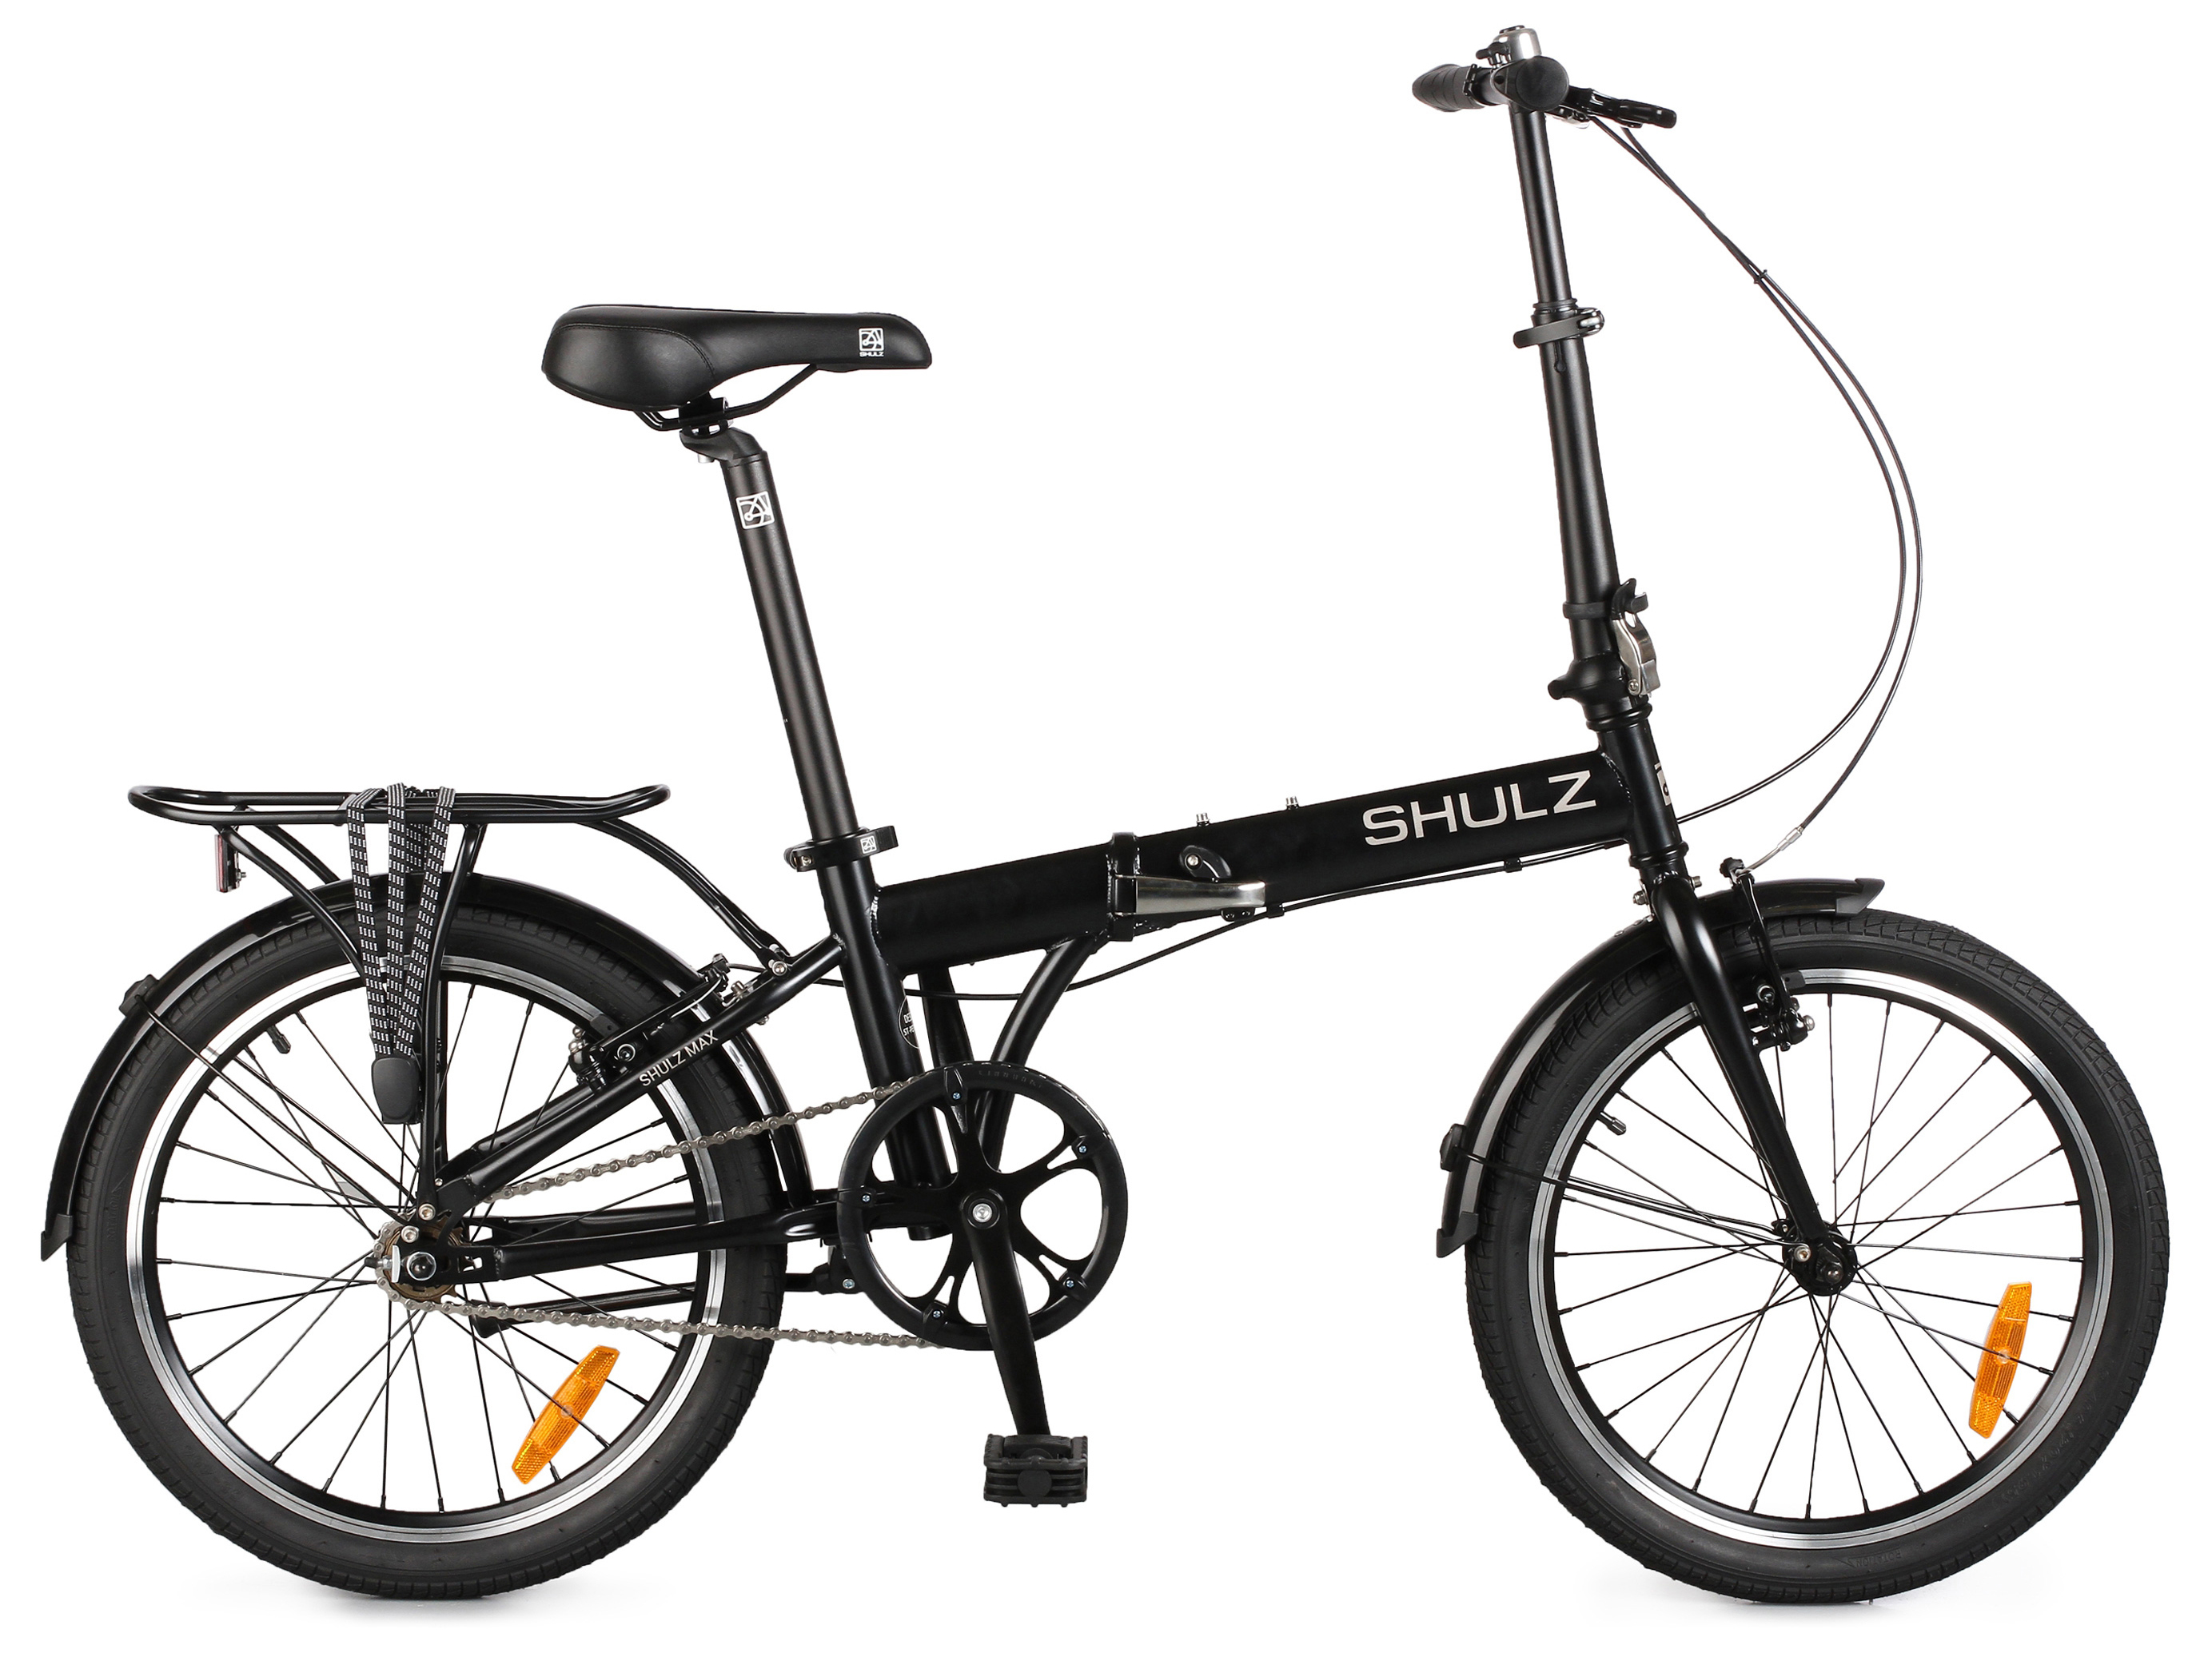  Отзывы о Складном велосипеде Shulz Max 2020